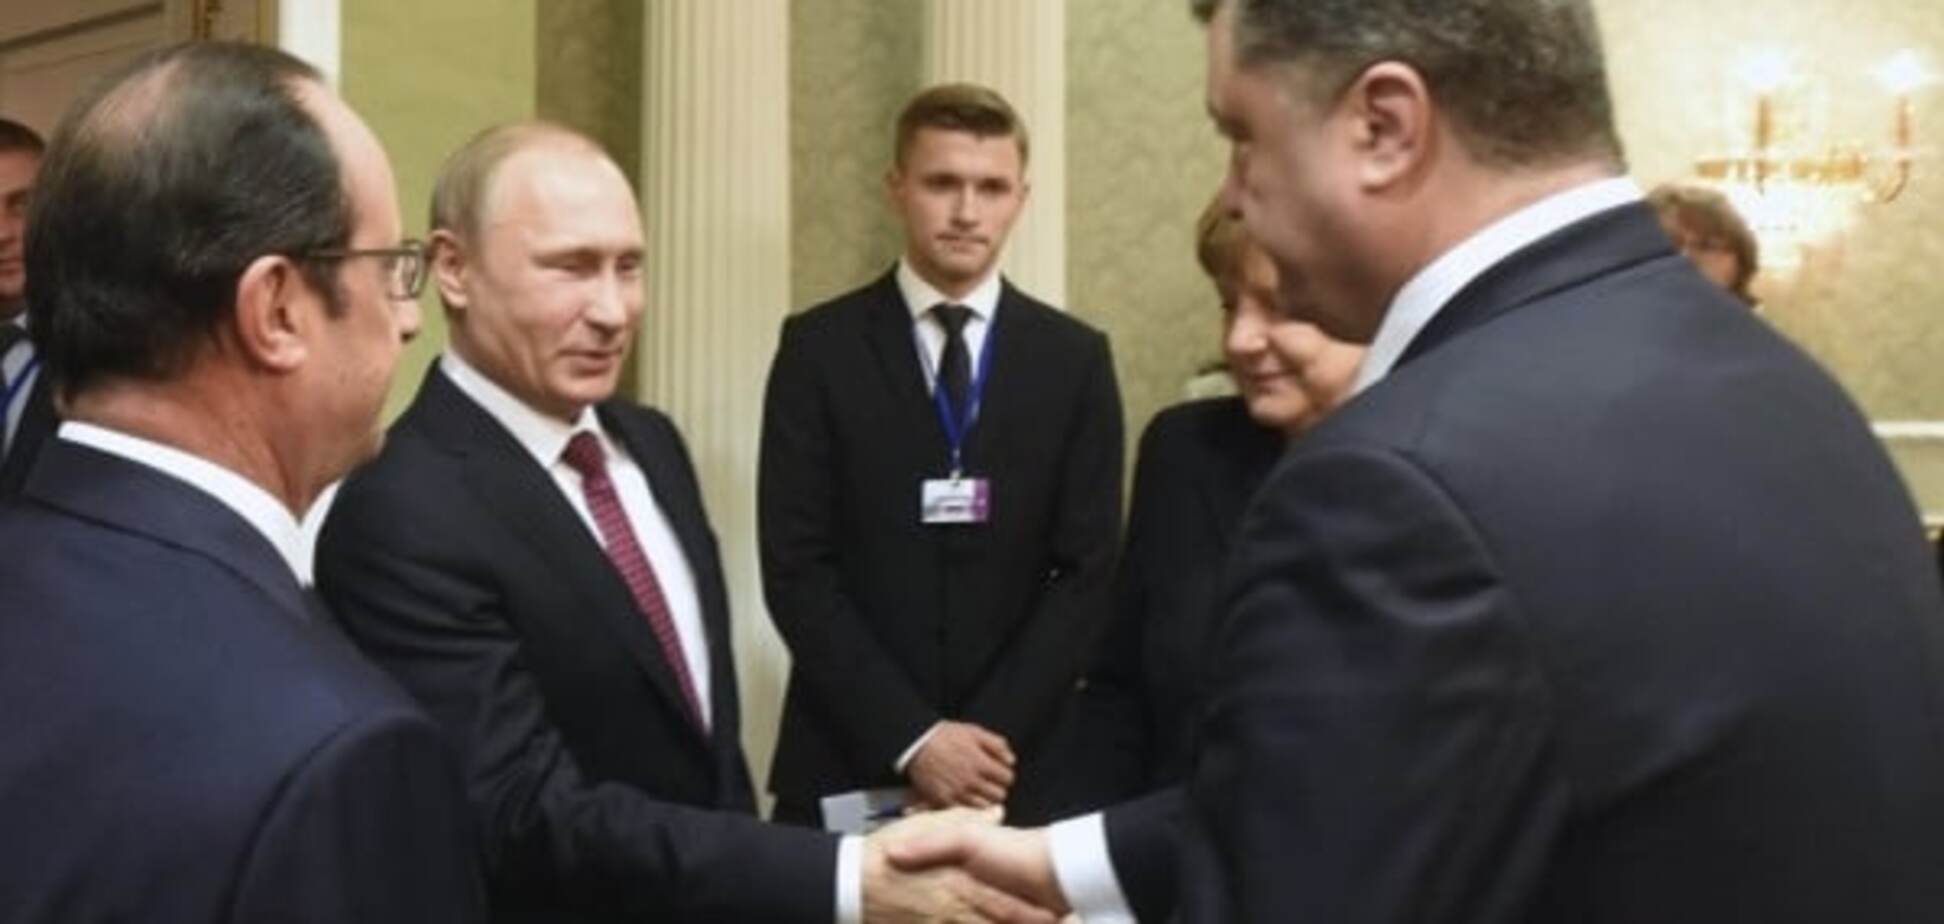 Петиция украинцев: Порошенко призвали не пожимать руку Путину на встречах 